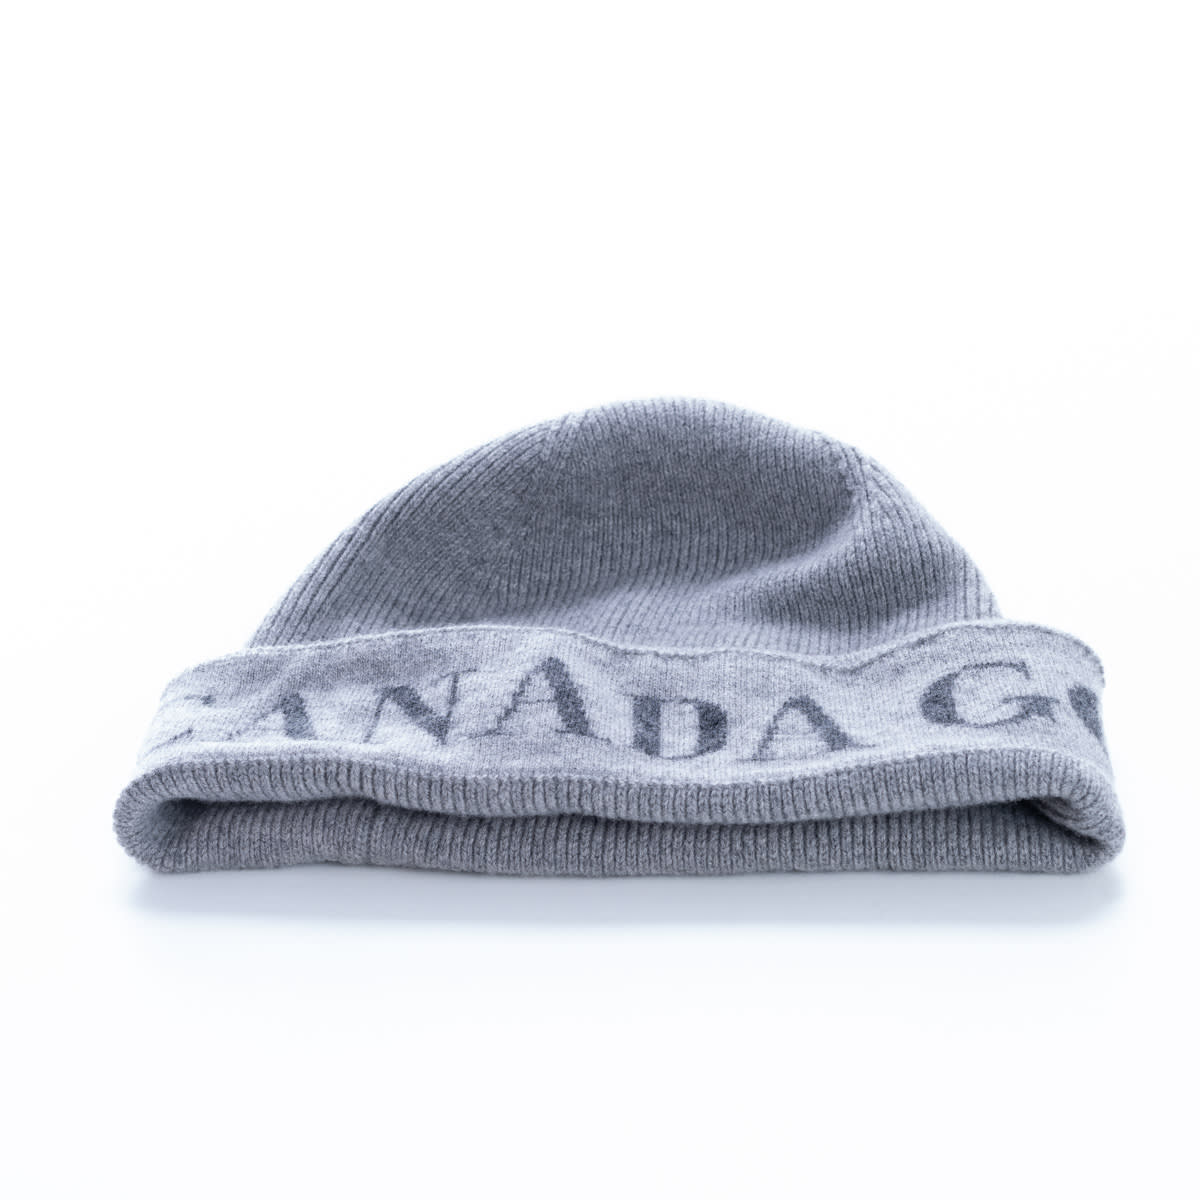 Canada Goose Canada Goose Merino Wool Hat